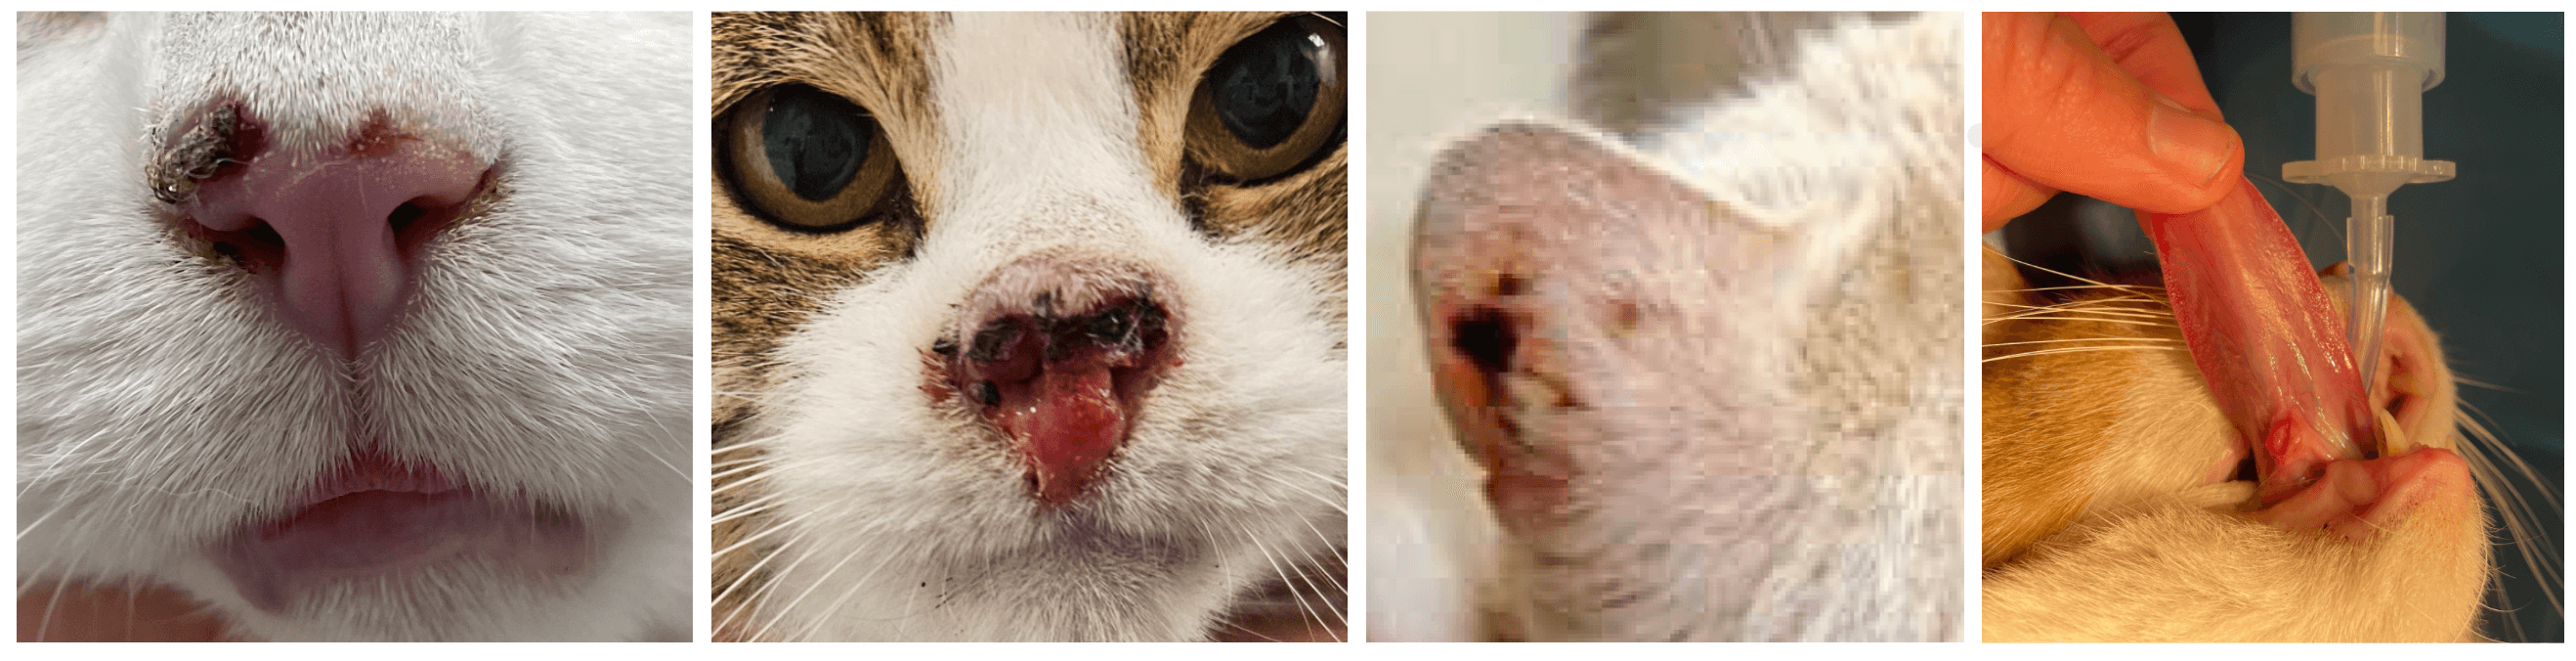 Plaveiselcelcarcinoom bij de kat